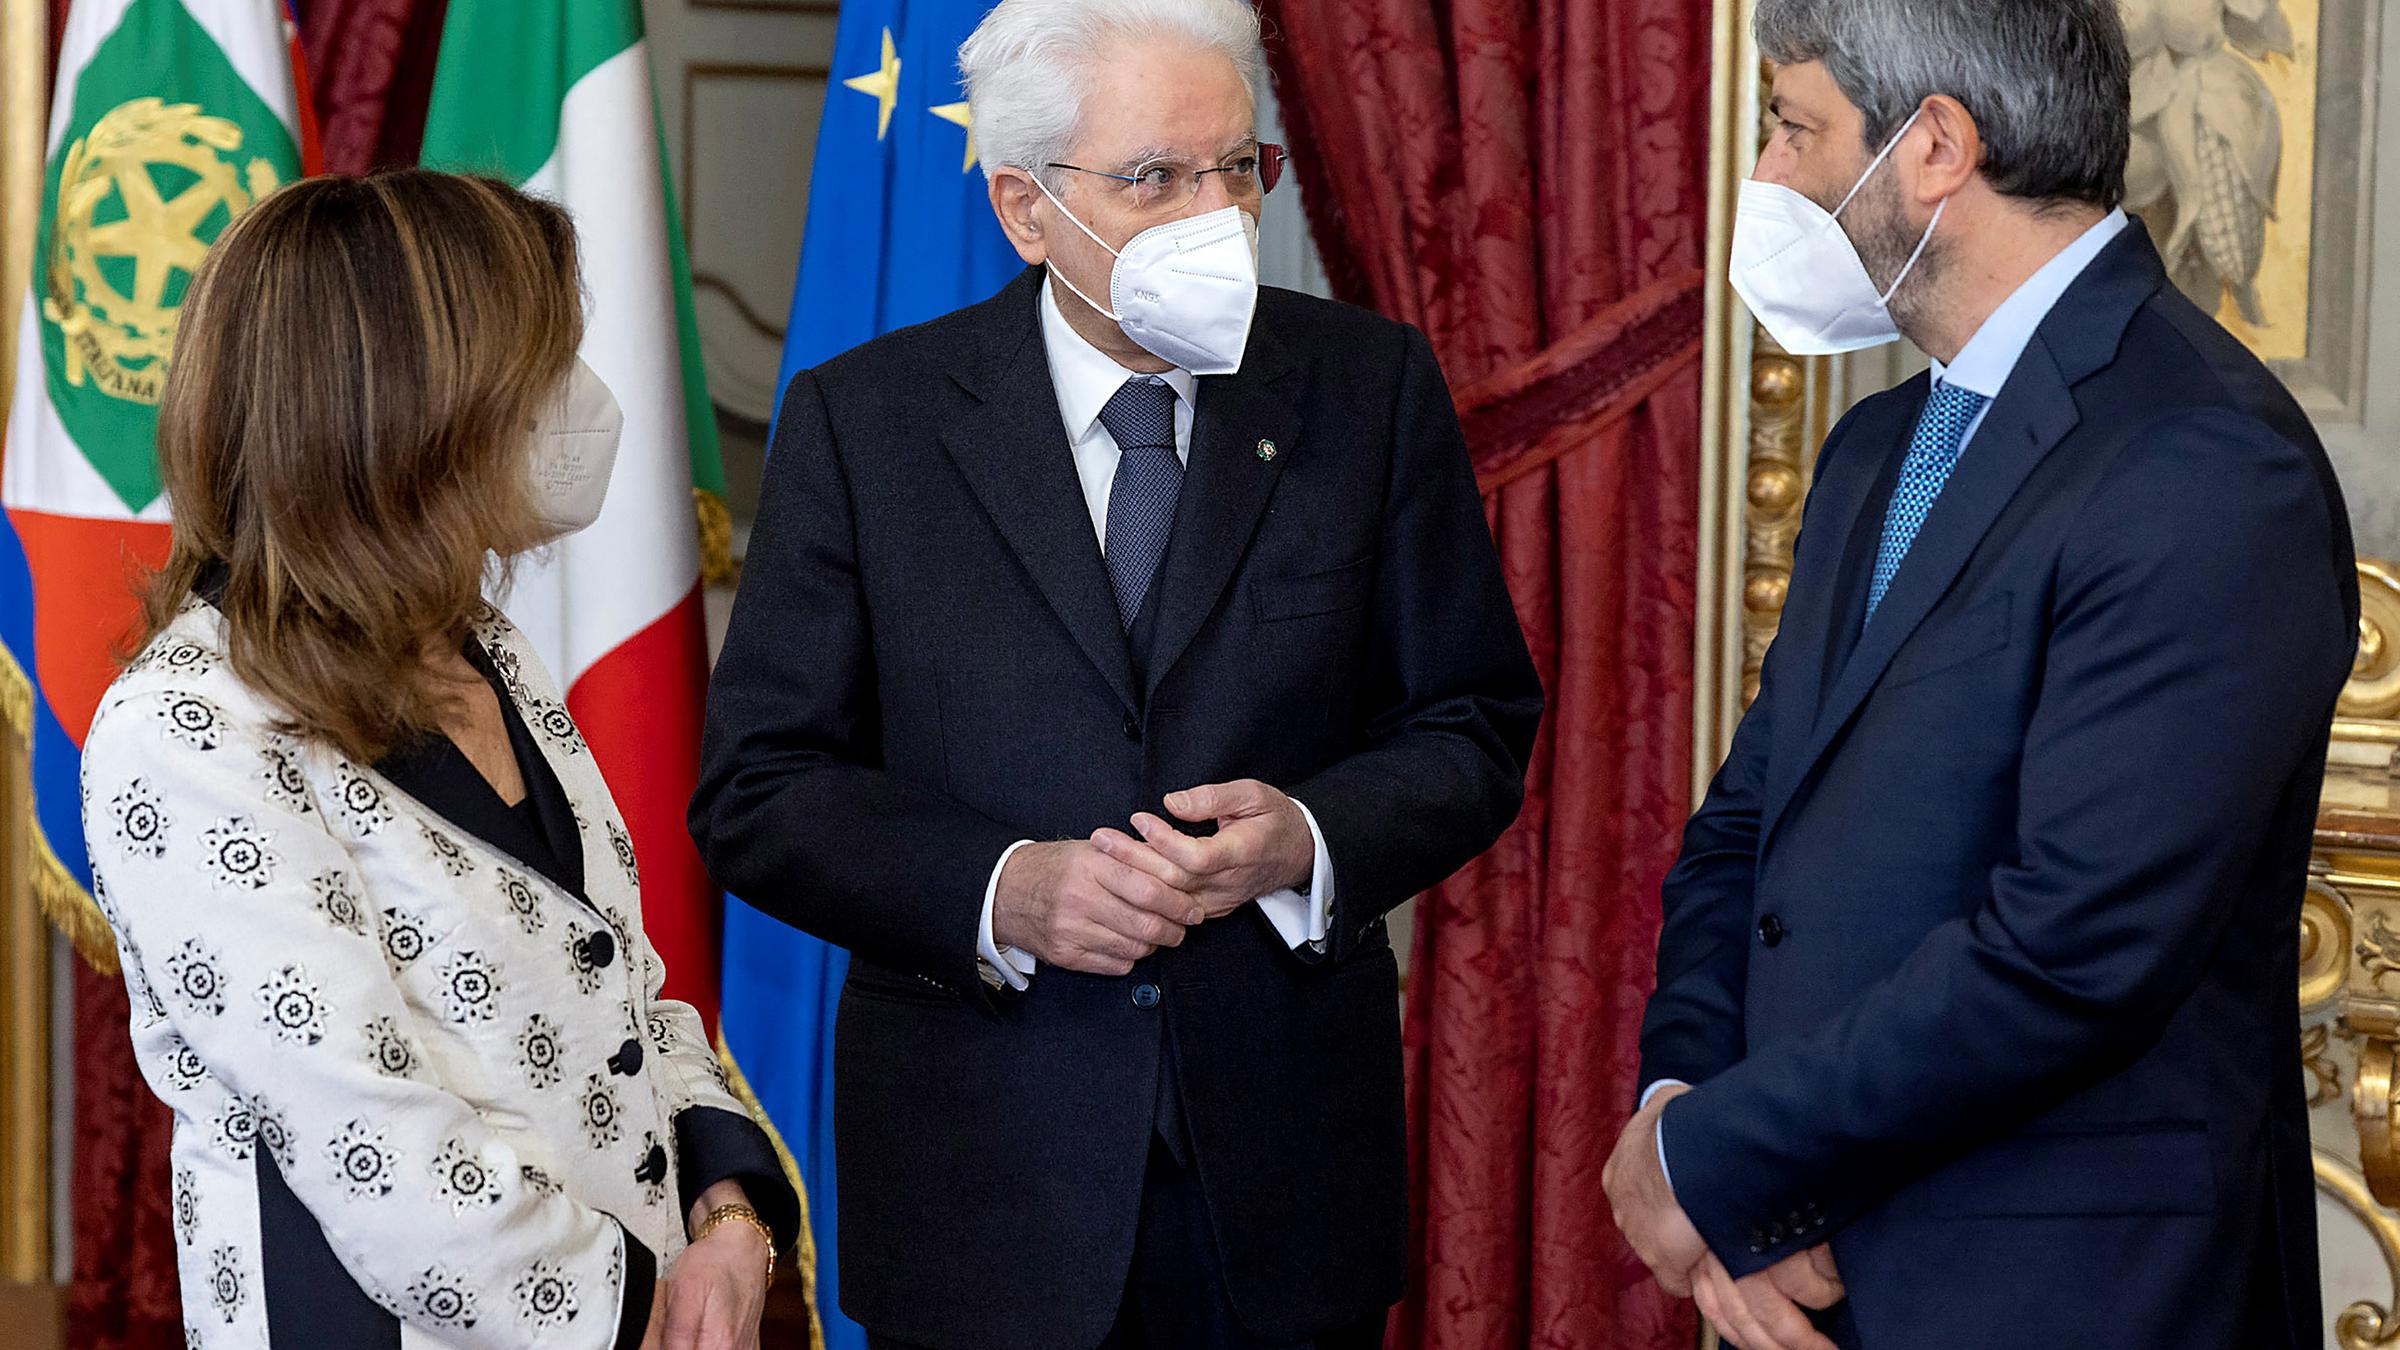 Italian President Sergio Mattarella (centre), Maria Elisabetta Alberti Casellati (left) and Roberto Fico (right).